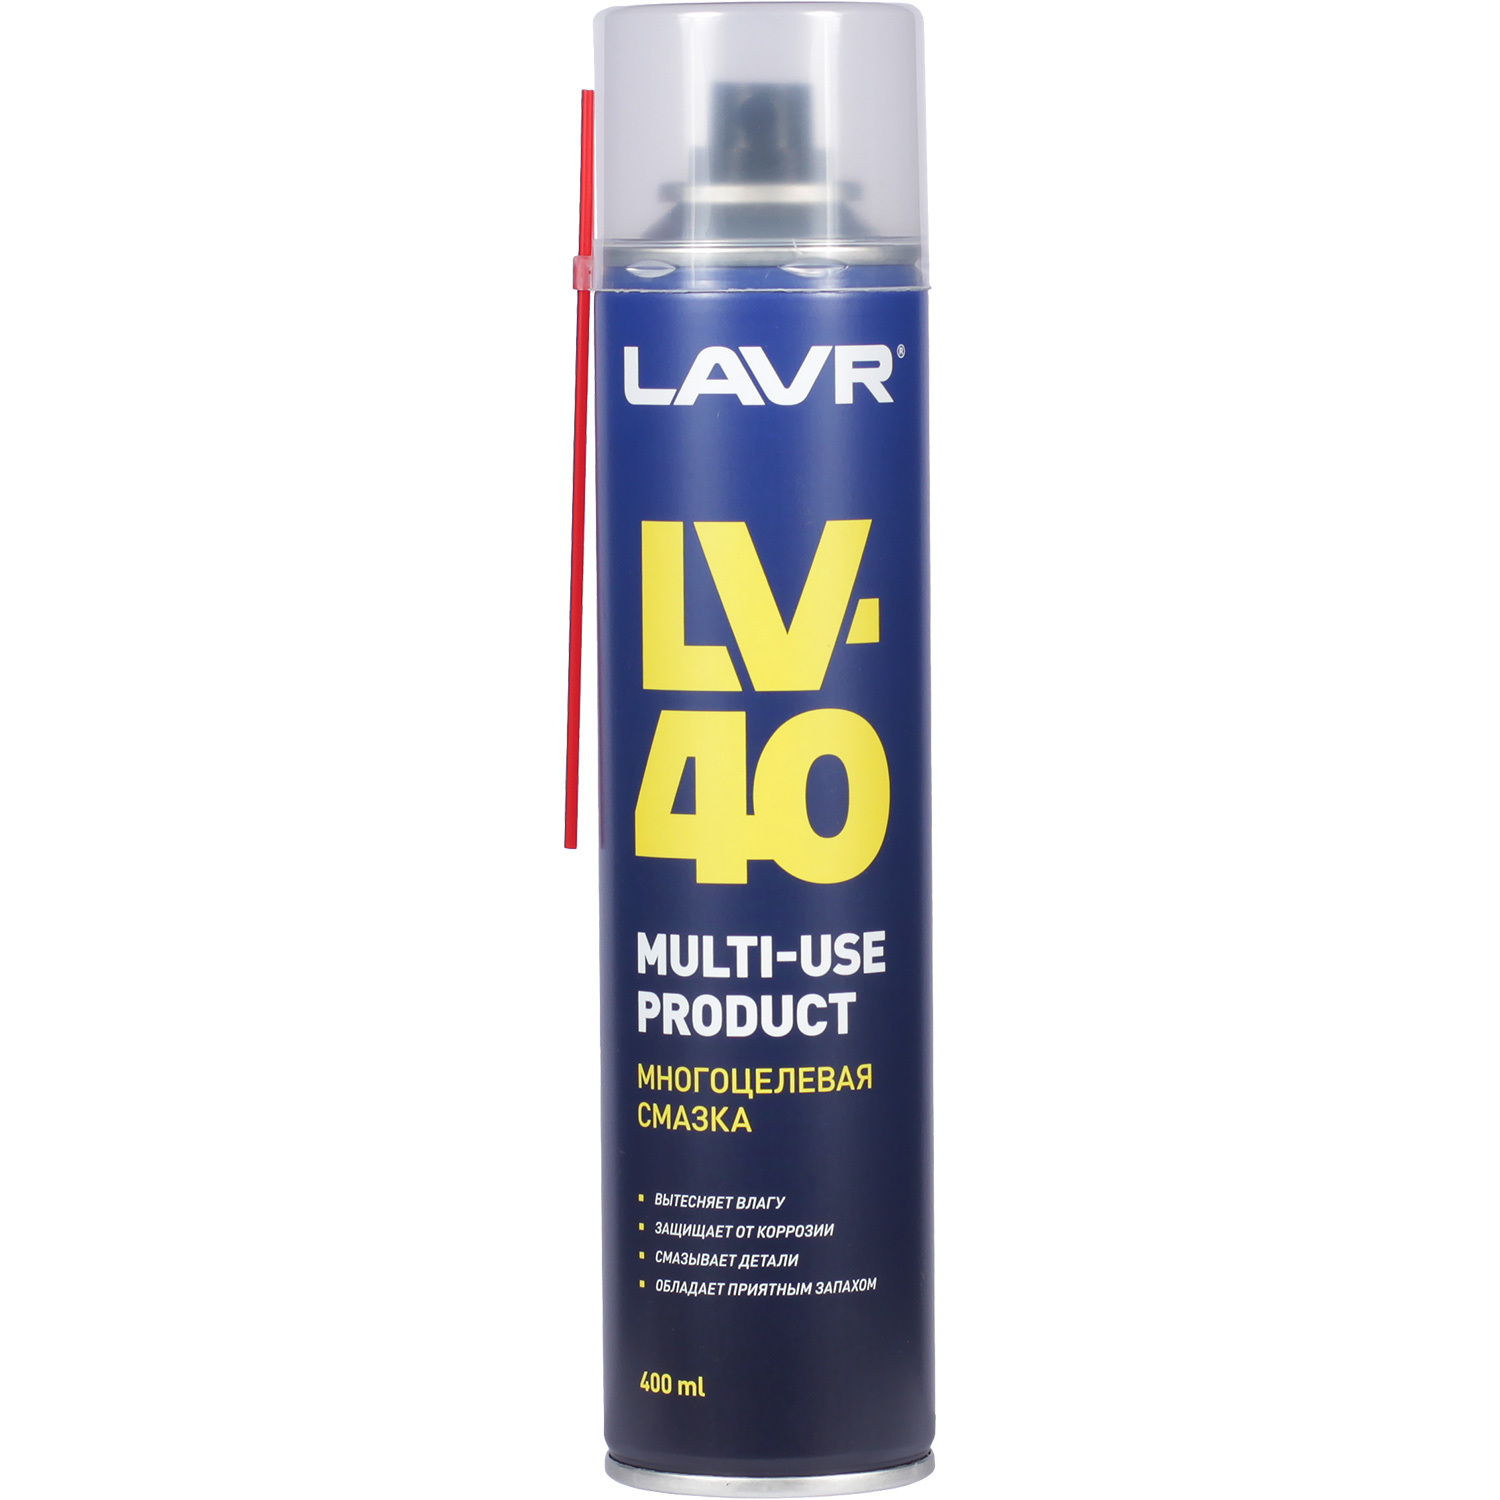 Lavr Многоцелевая смазка LV-40 LAVR Ln 1485 многоцелевая смазка lavr multipurpose grease lv 40 210 мл аэрозоль ln1484